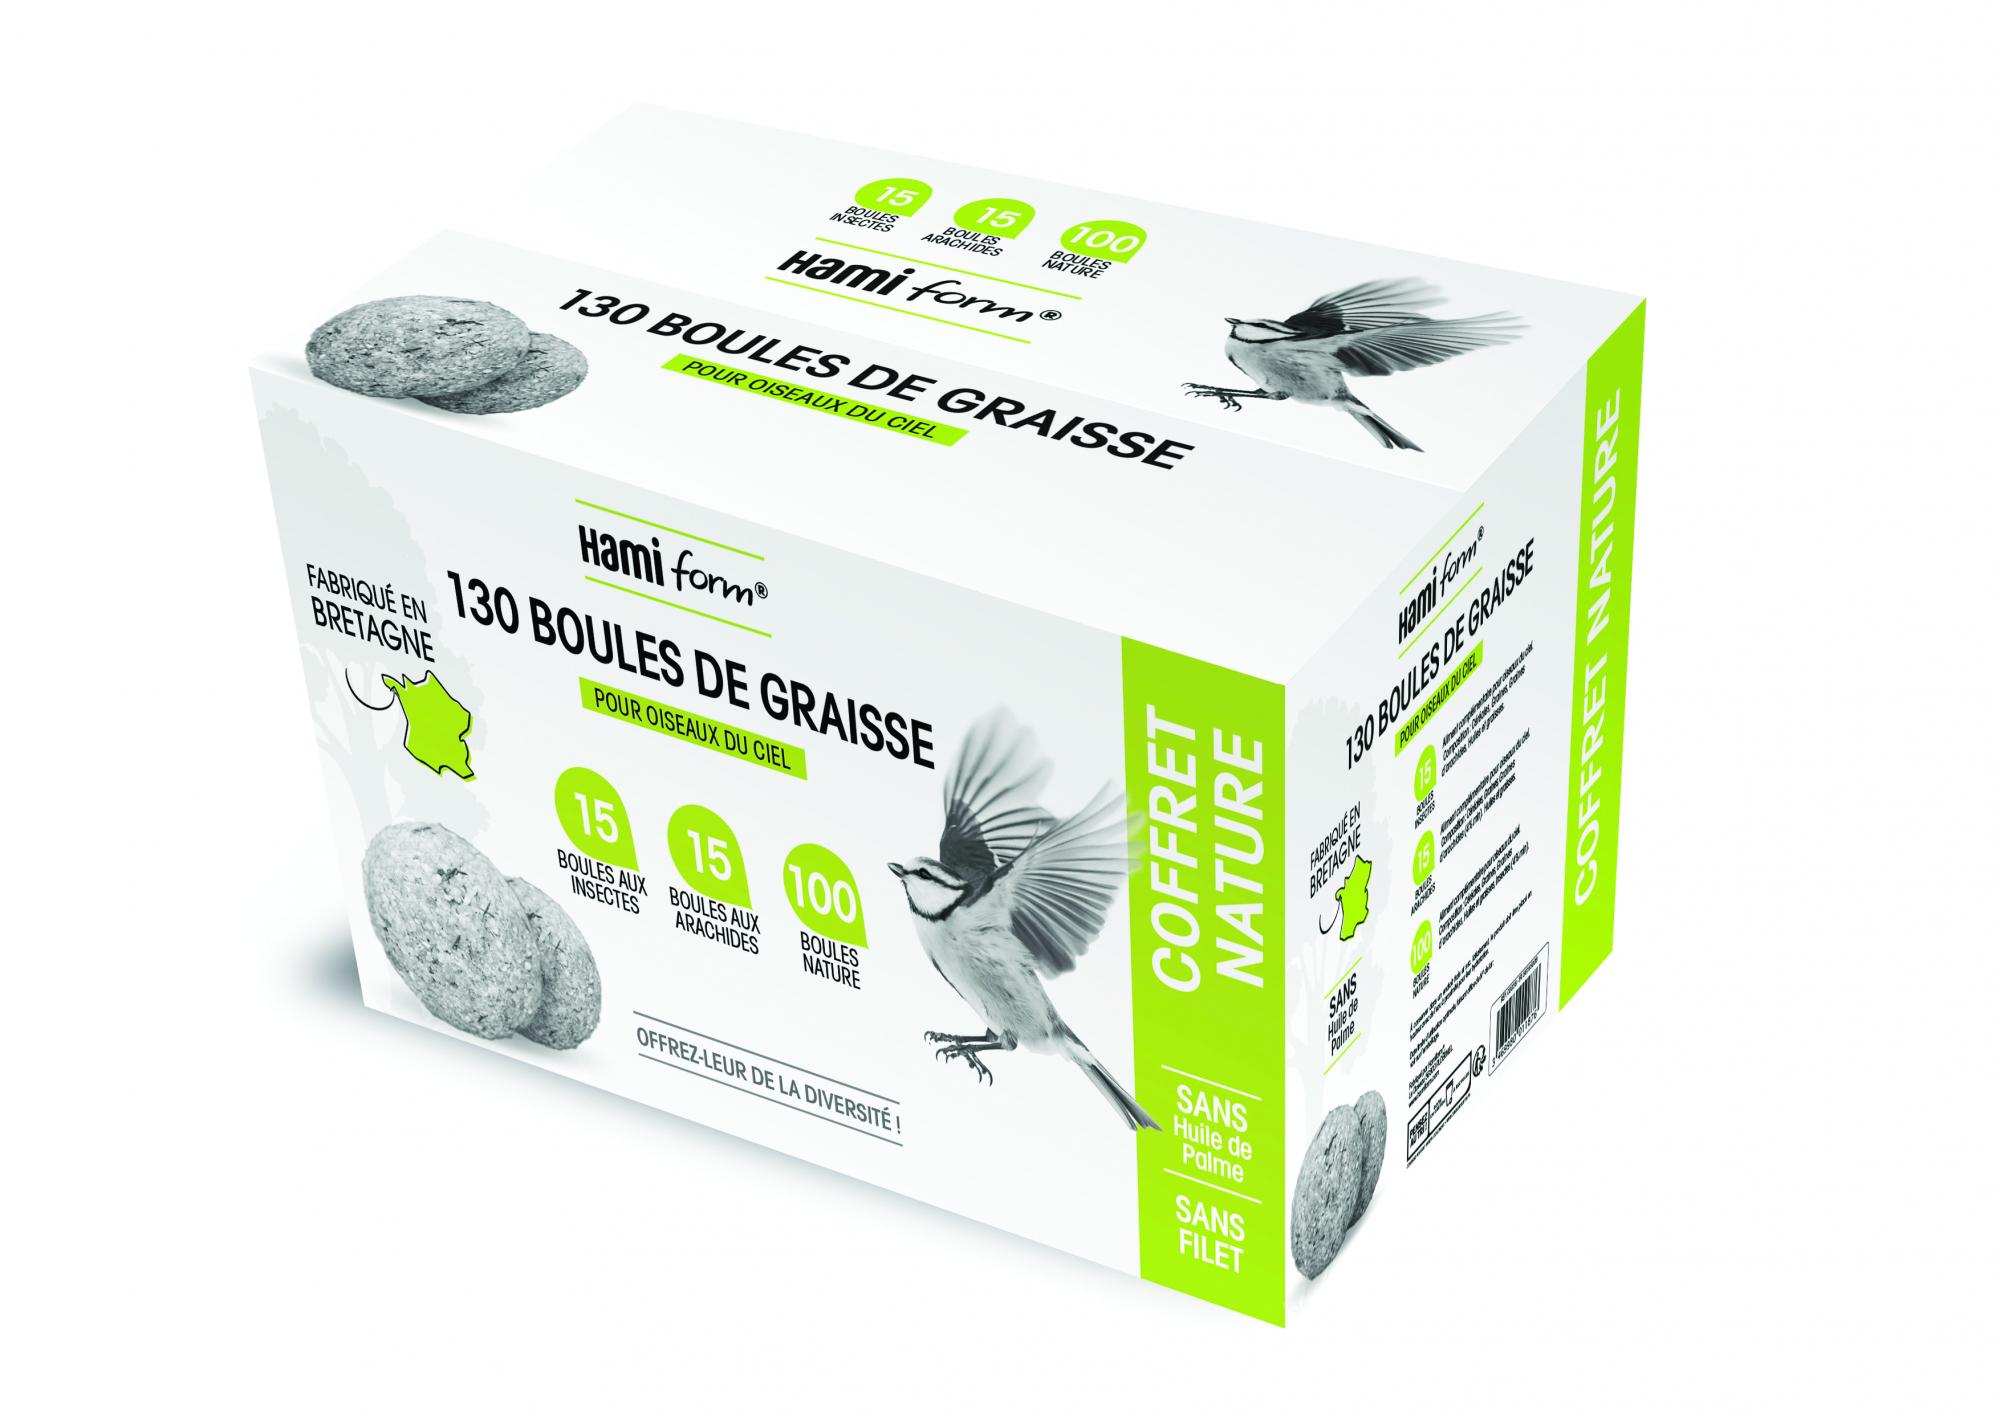 HamiForm Alimentos para pássaros selvagens - Caixa com 130 bolas de gordura variadas